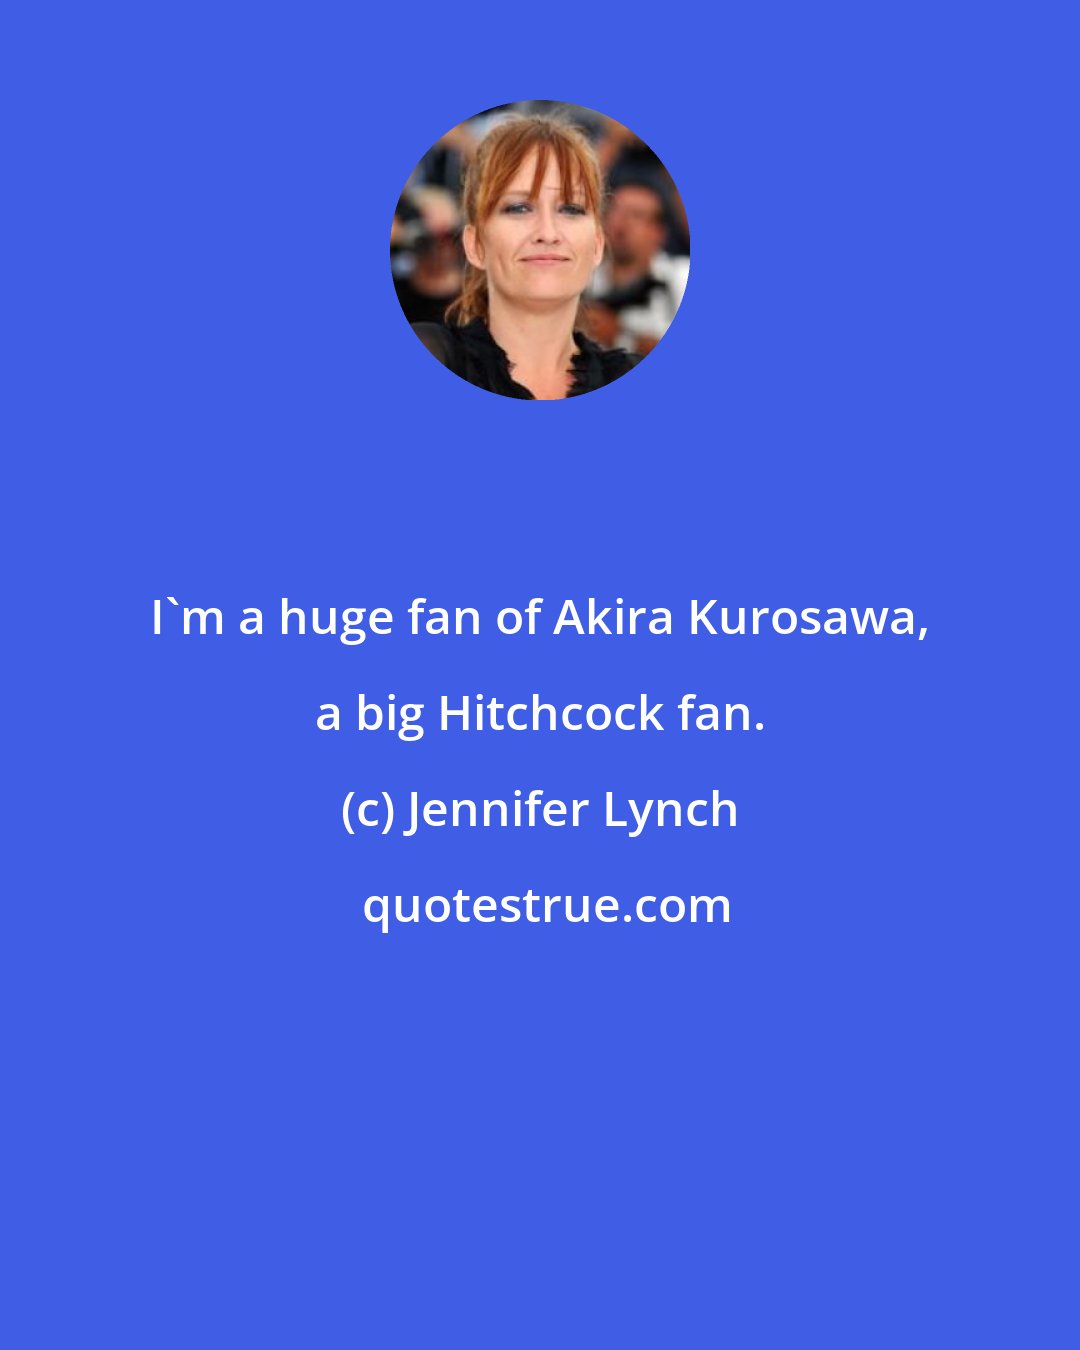 Jennifer Lynch: I'm a huge fan of Akira Kurosawa, a big Hitchcock fan.